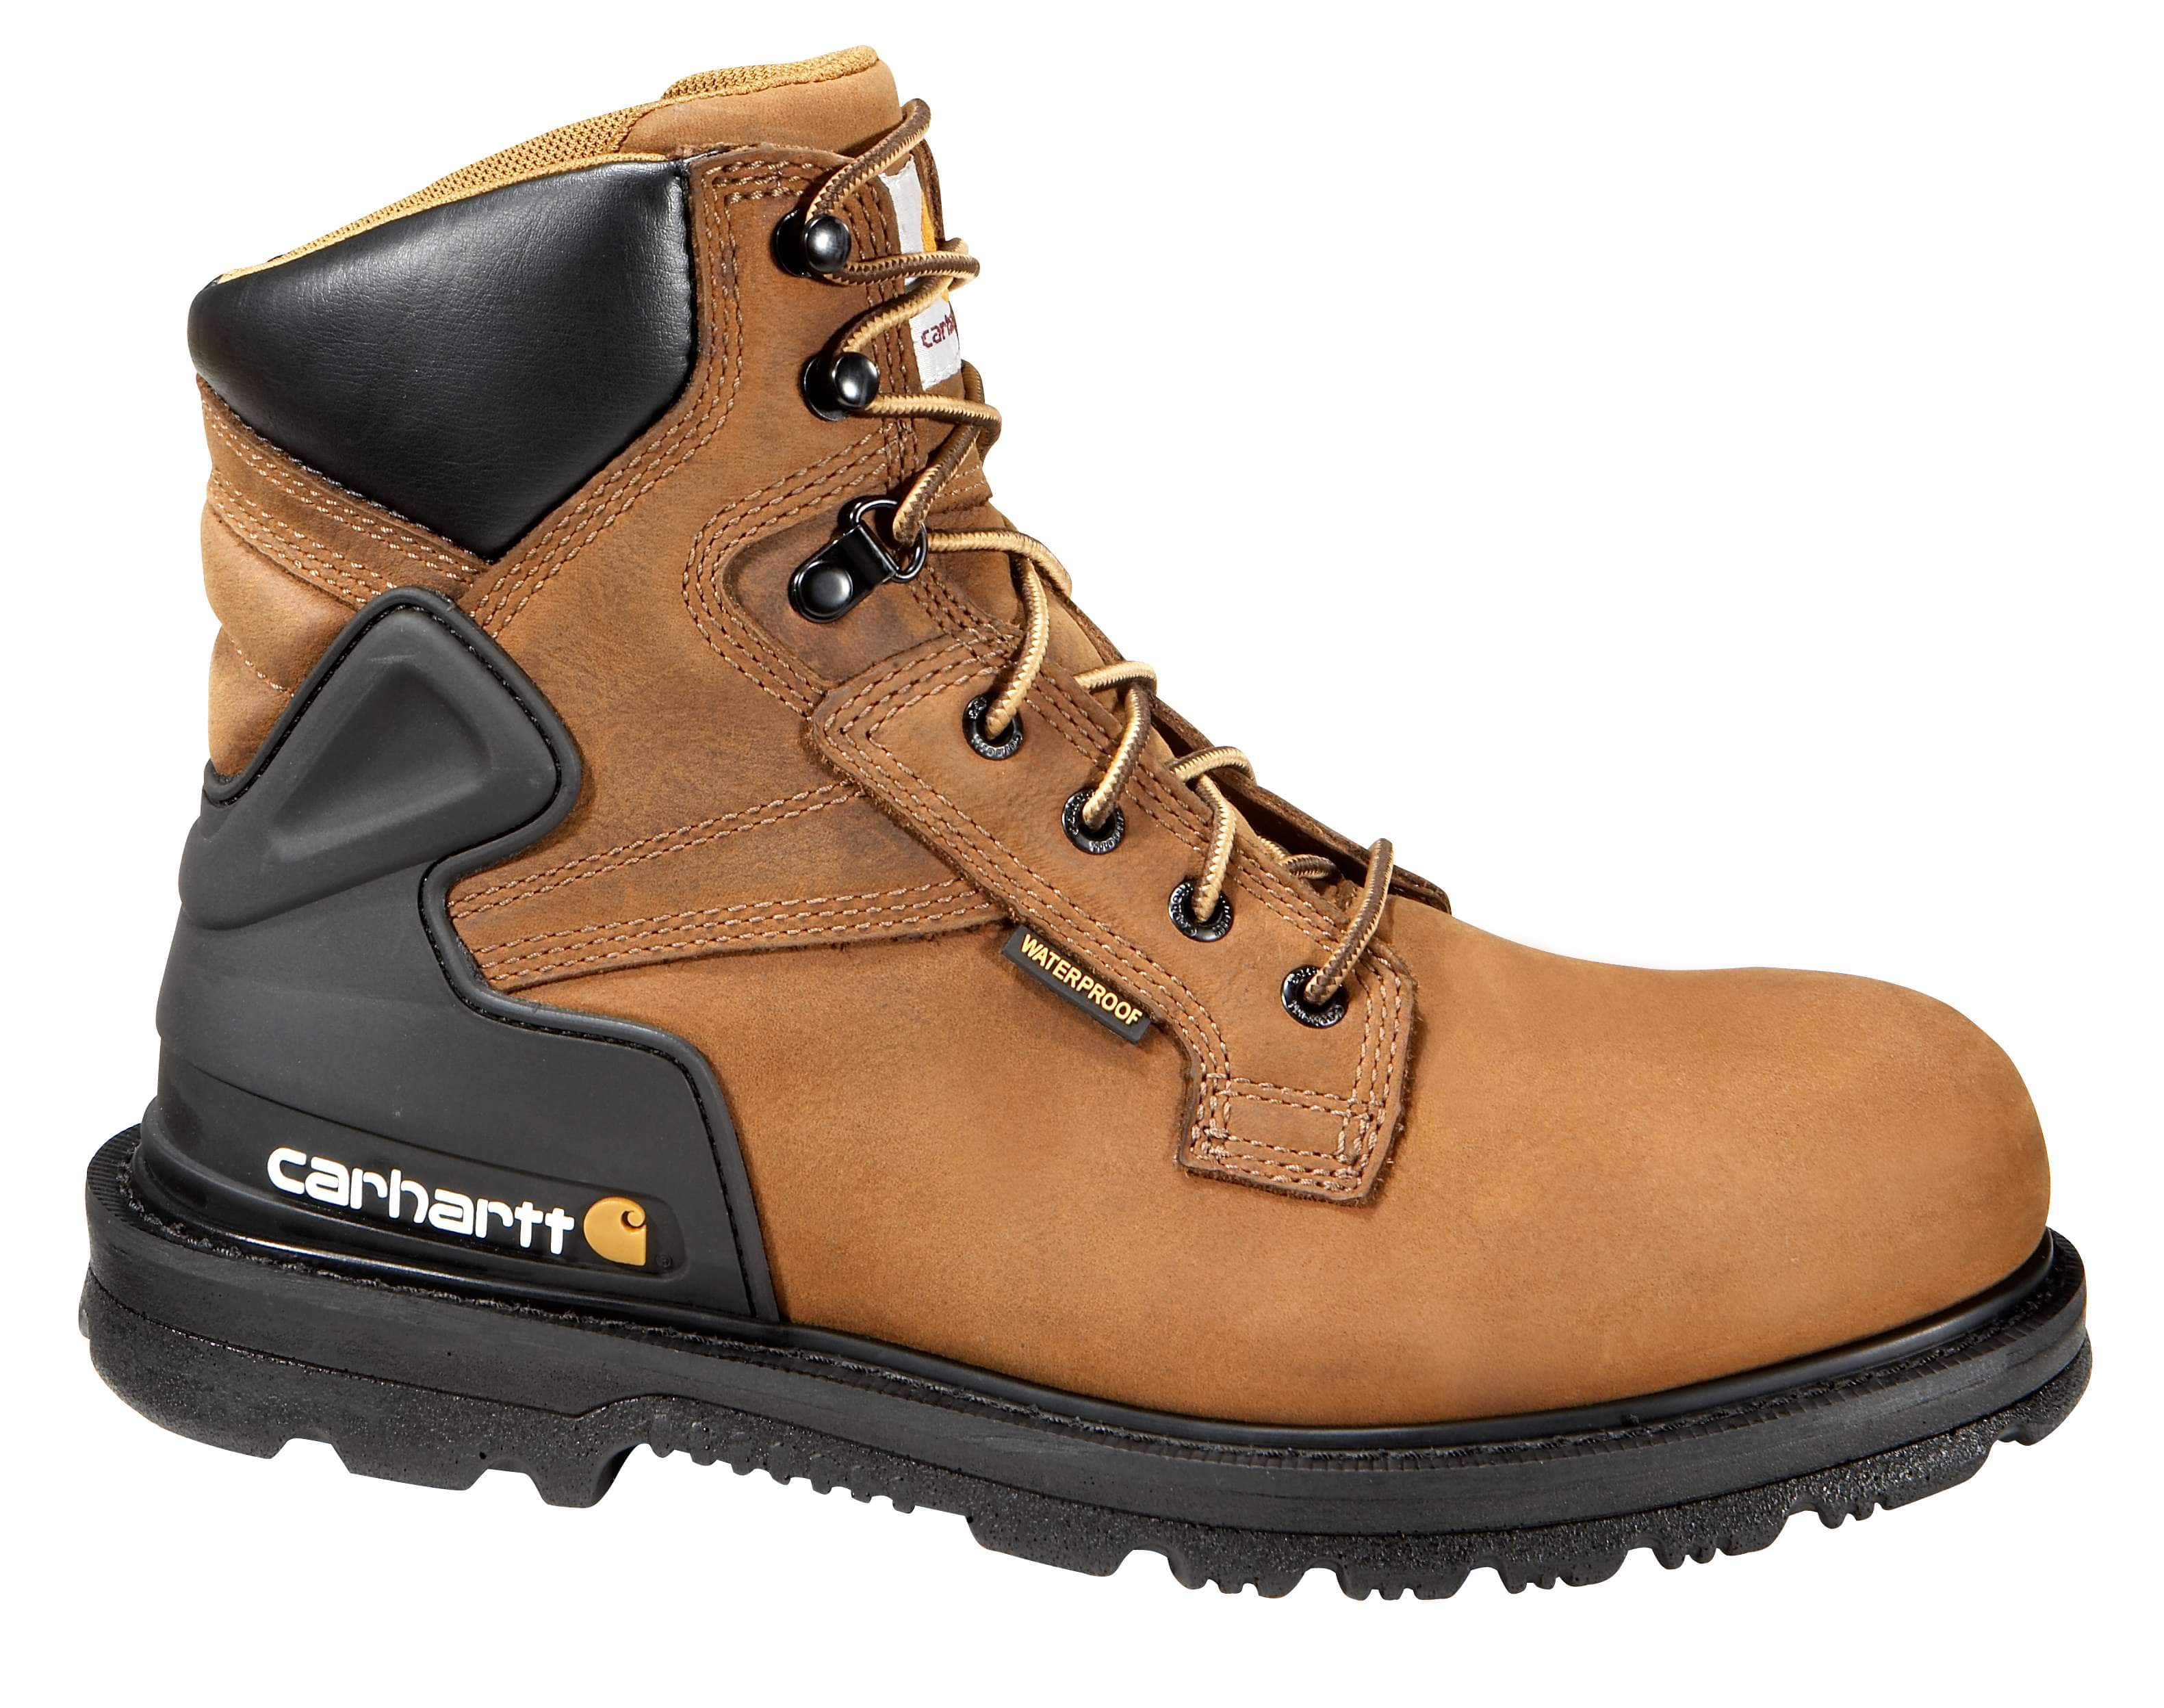 new carhartt boots